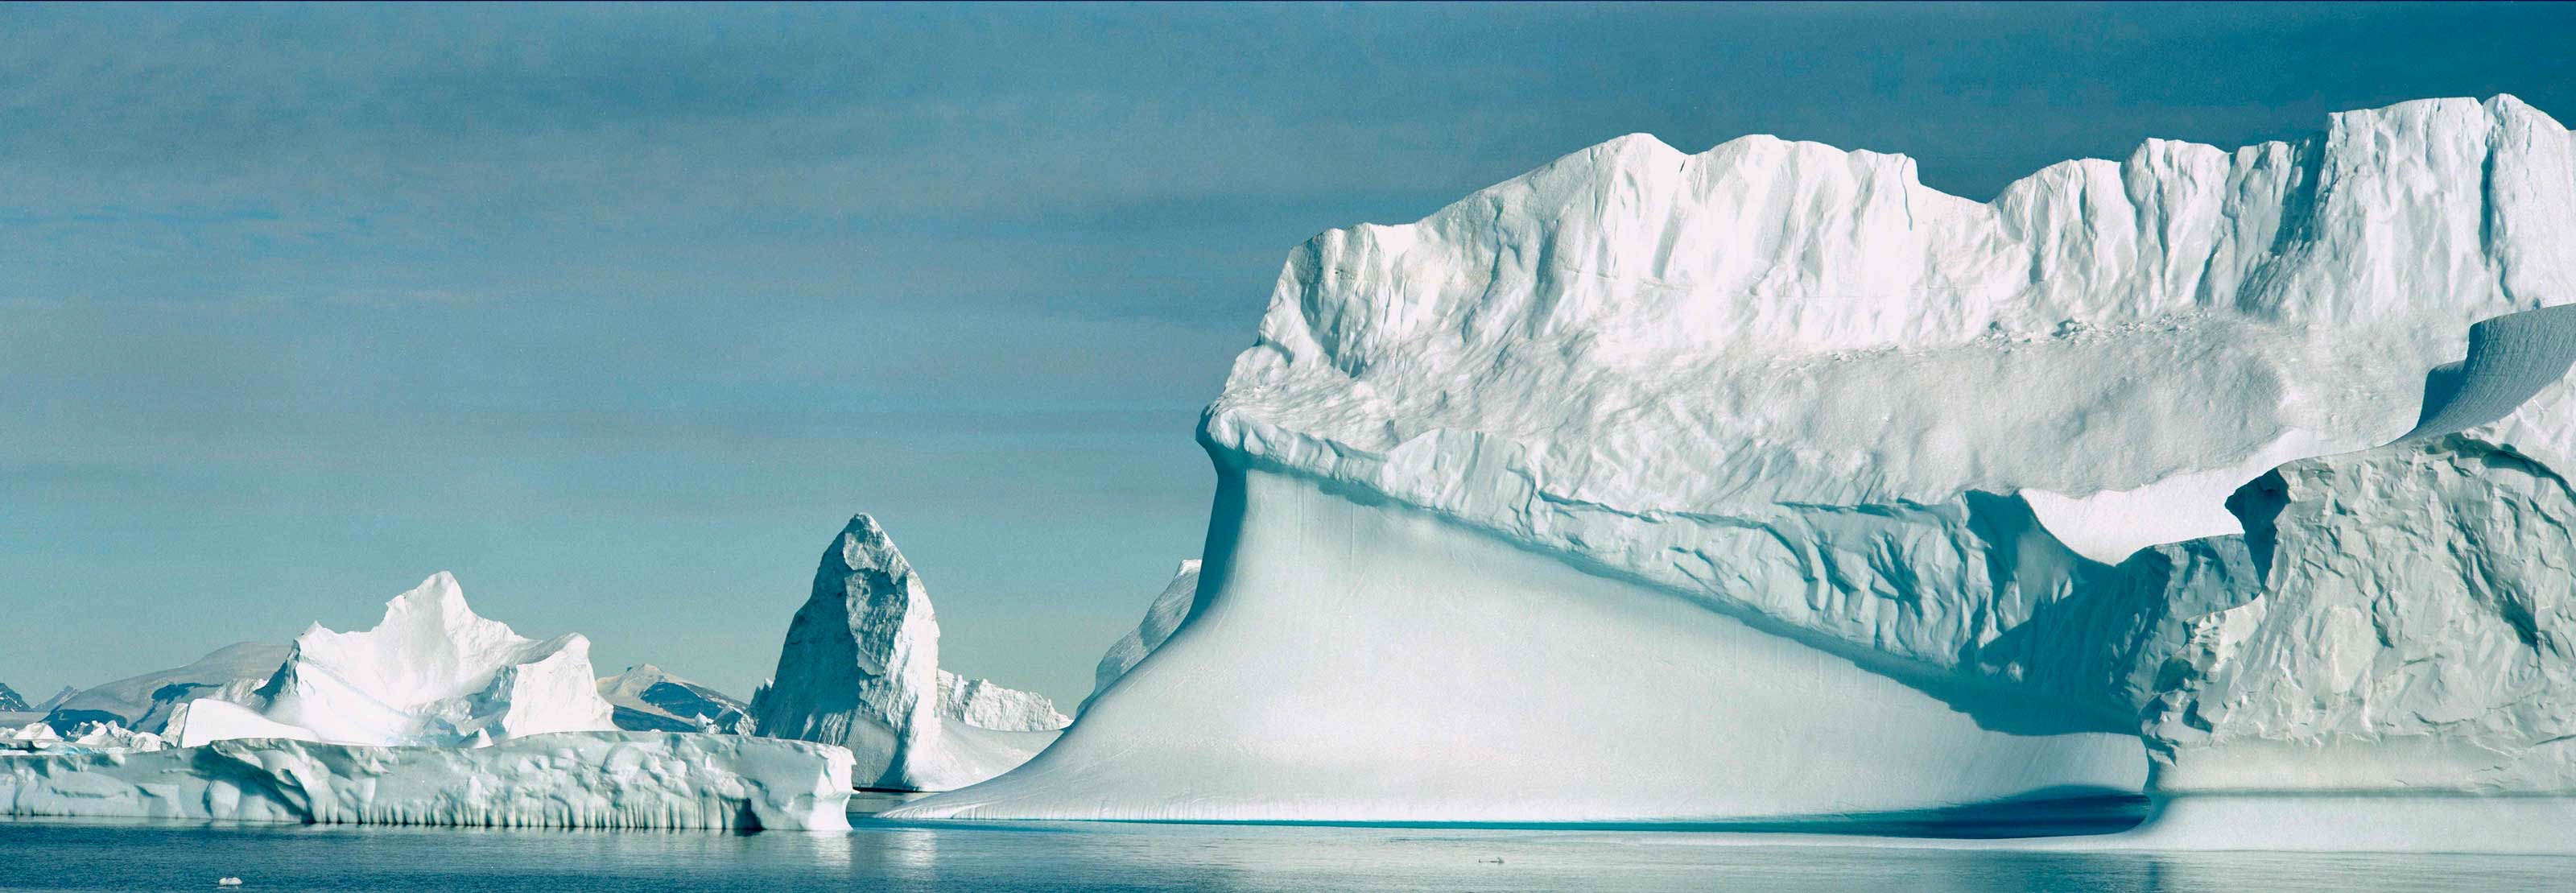 N-46-8_ijsberg.jpg